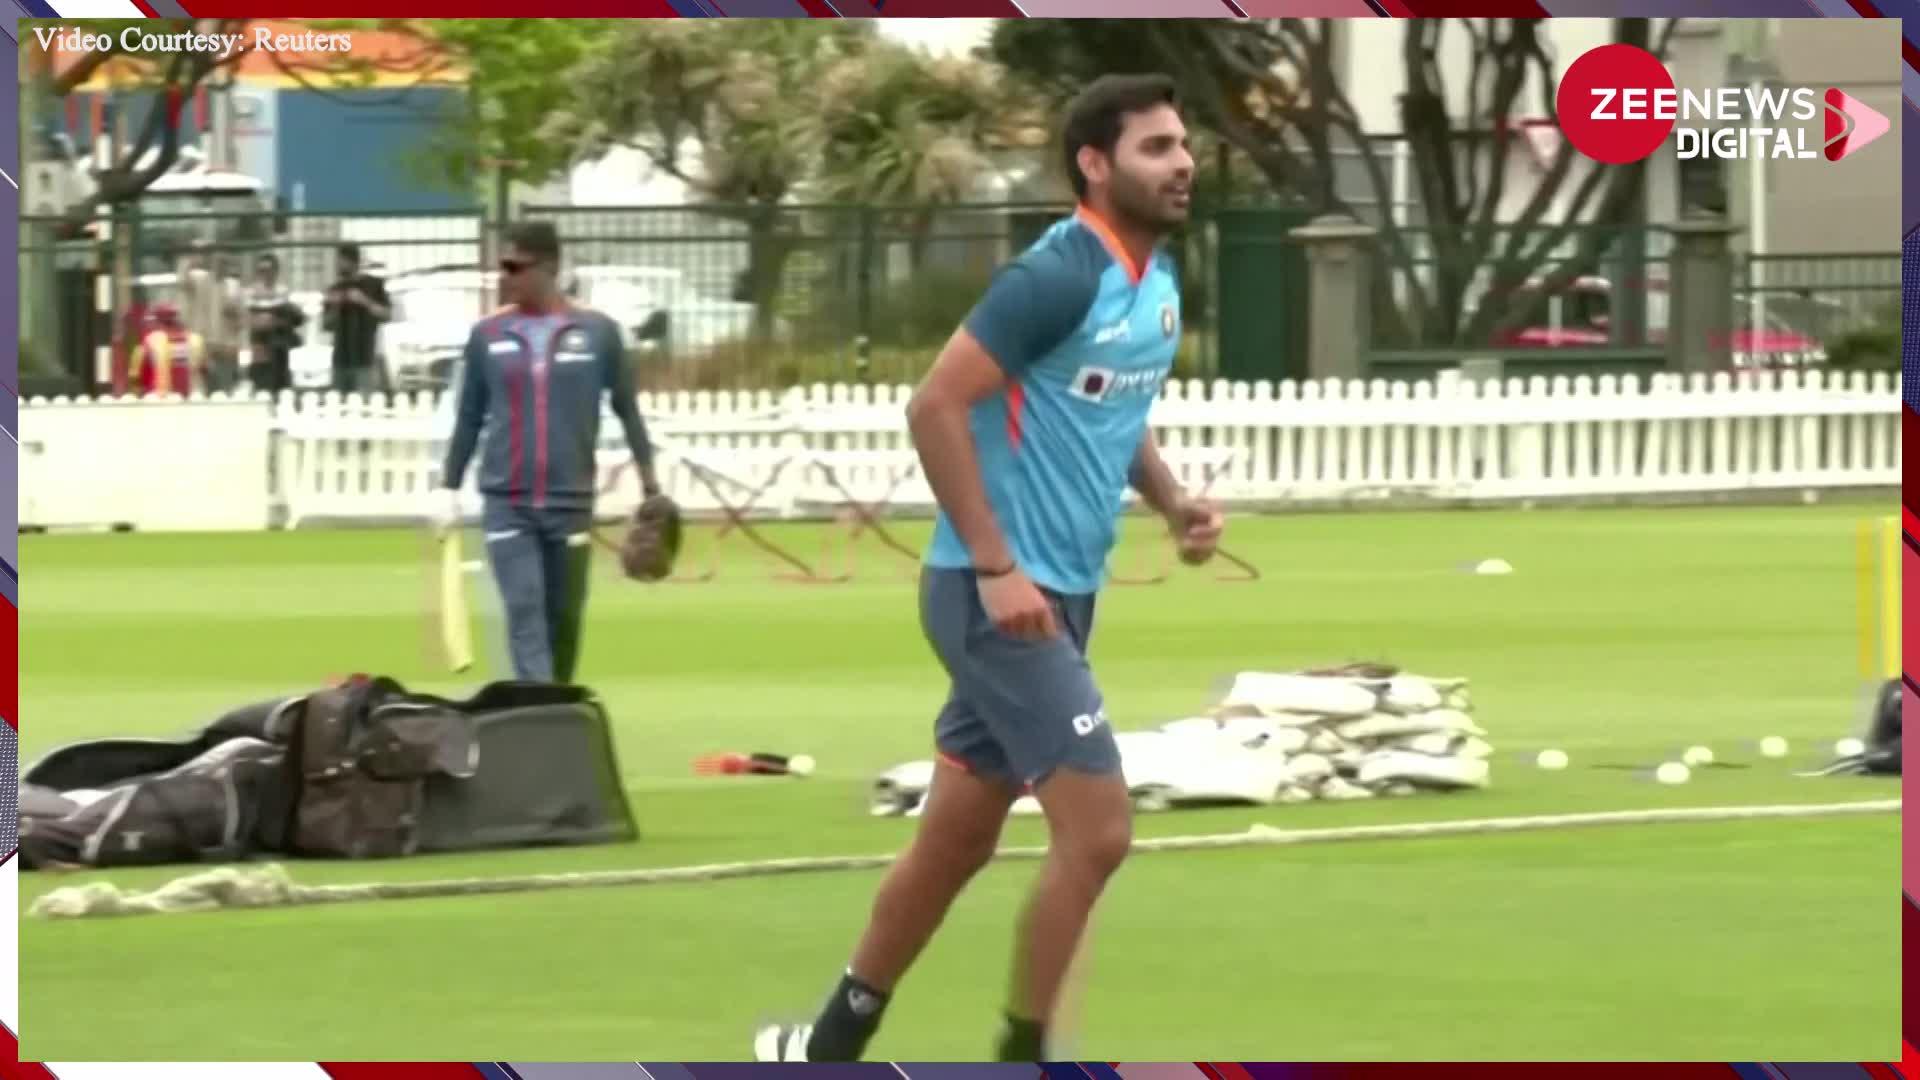 IND vs NZ सीरीज से पहले Team India ने जमकर की प्रैक्टिस, नैट्स में पसीने बहाते हुए दिखाई दिए खिलाड़ी